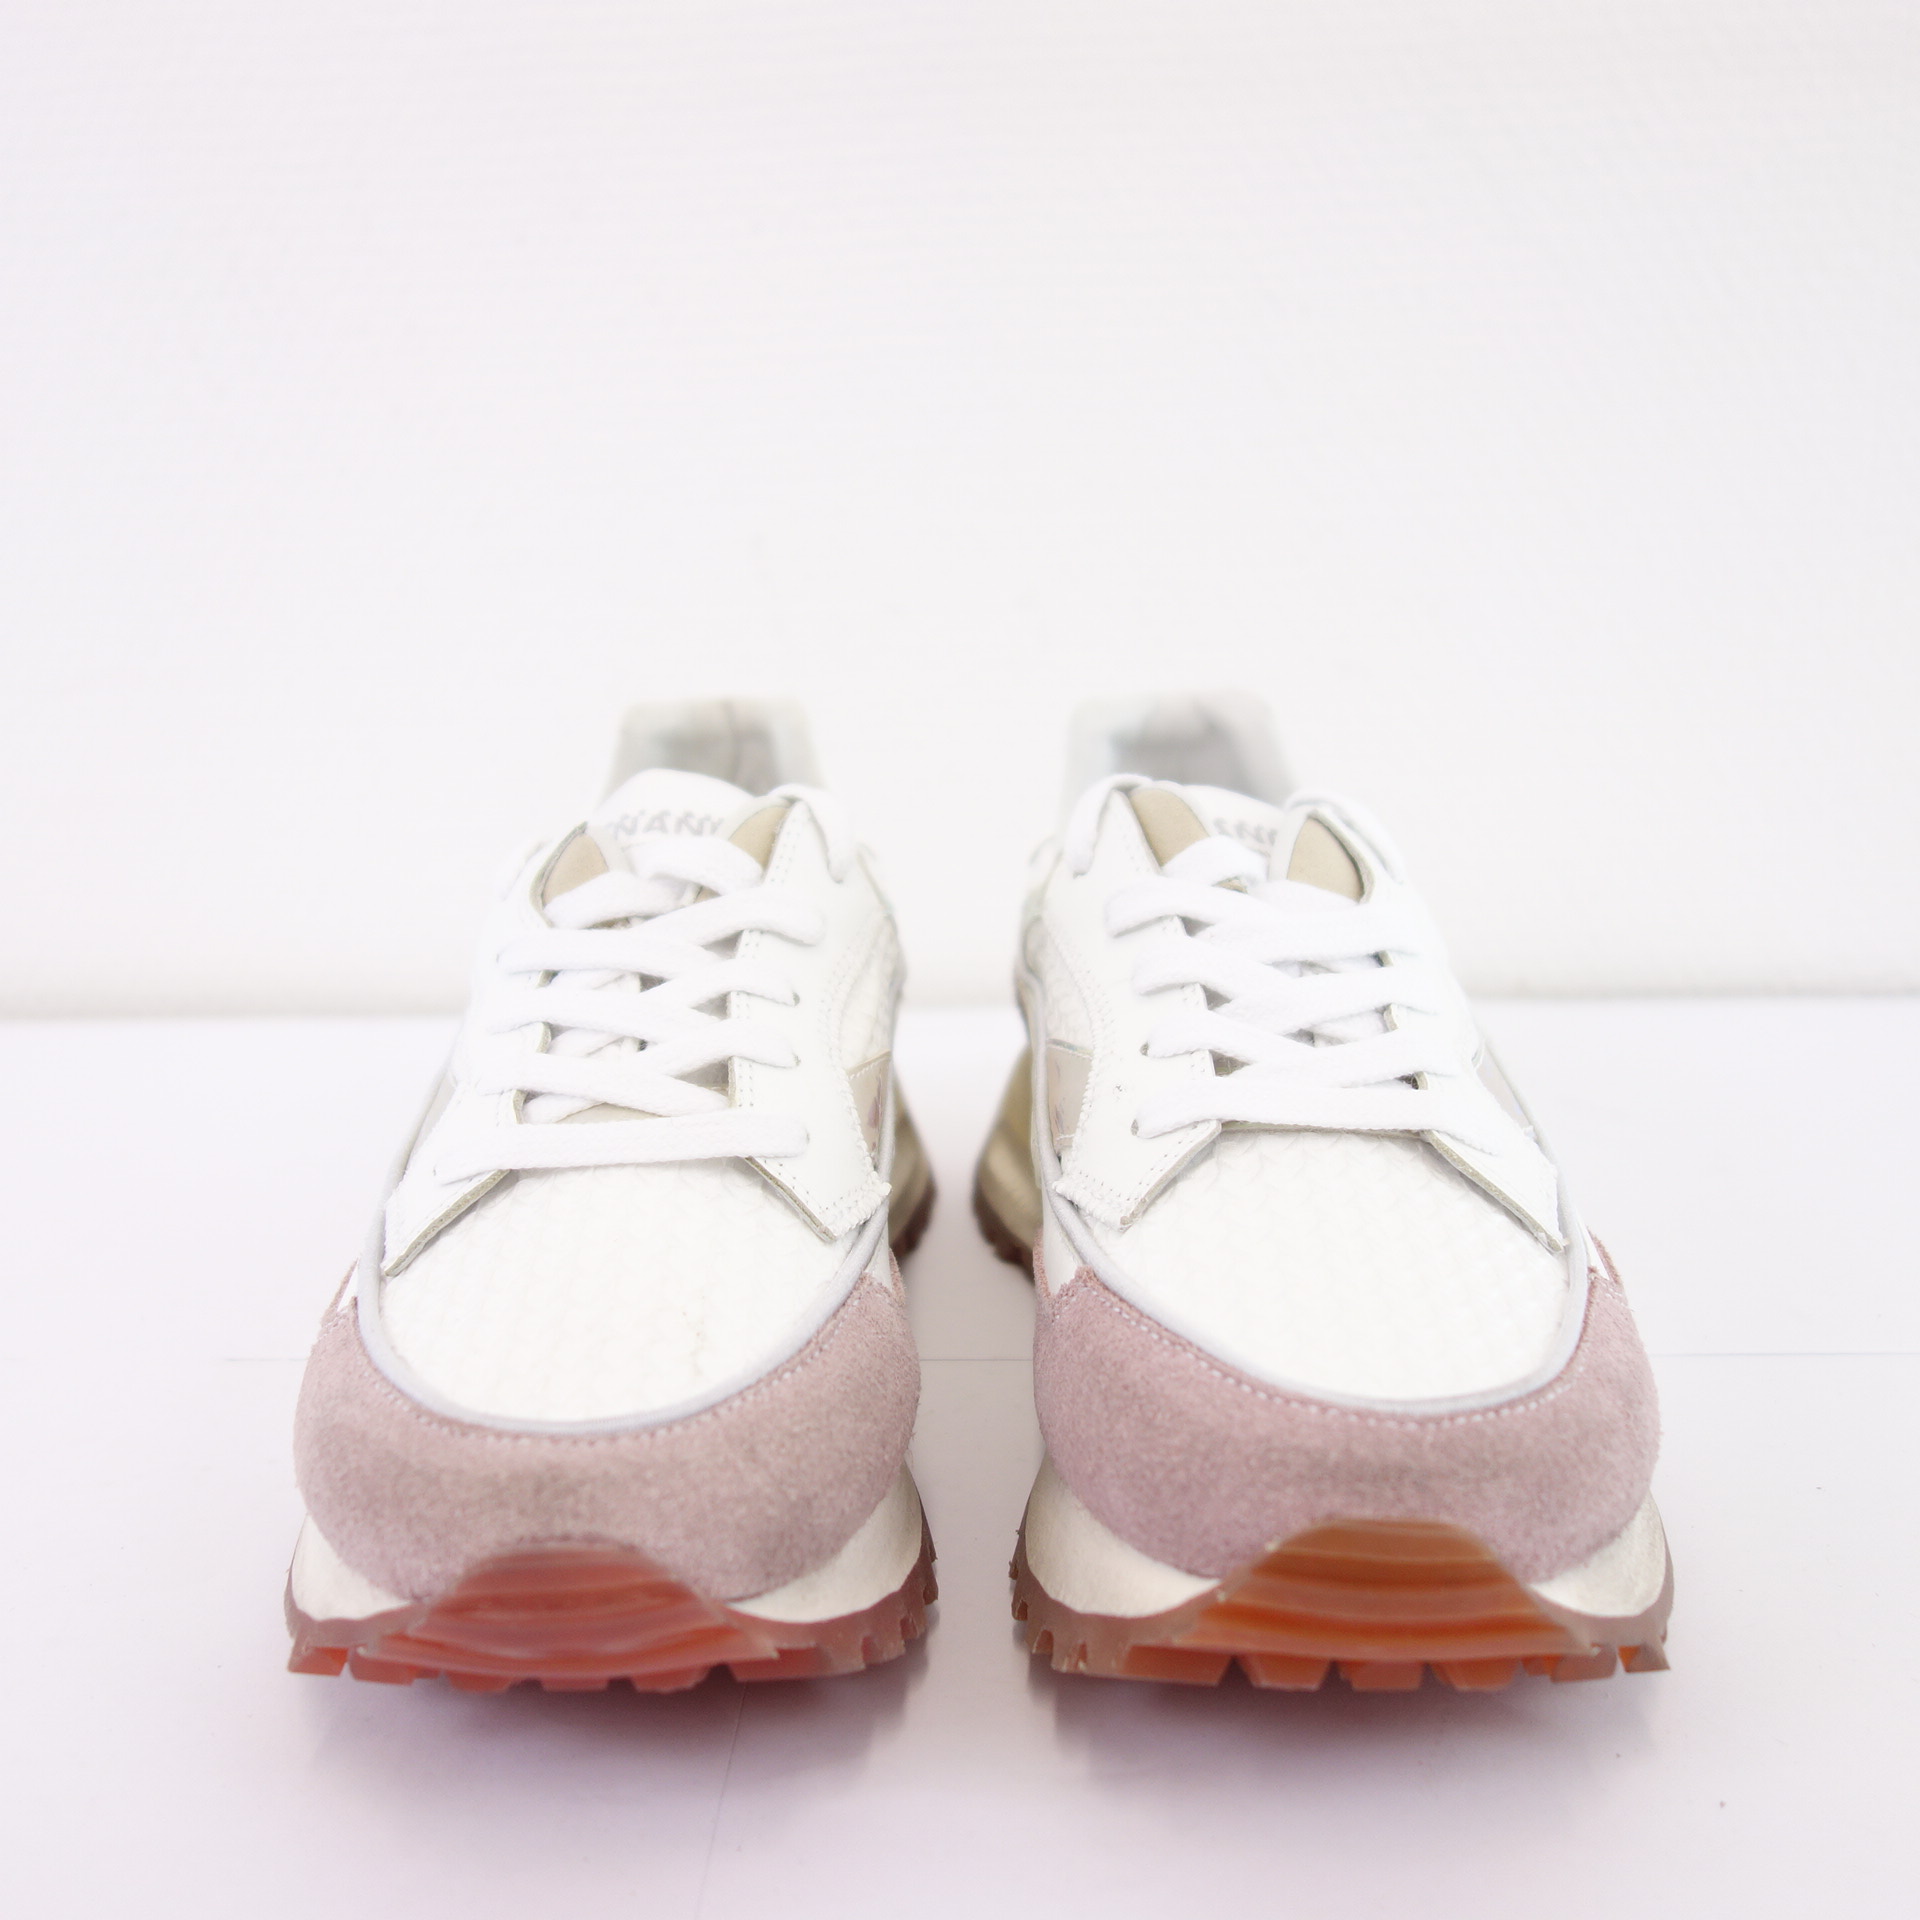 HIDNANDER Damen Schuhe Low Top Sneaker Sportschuhe Leder Textil Modell Threedome Weiß Rosa